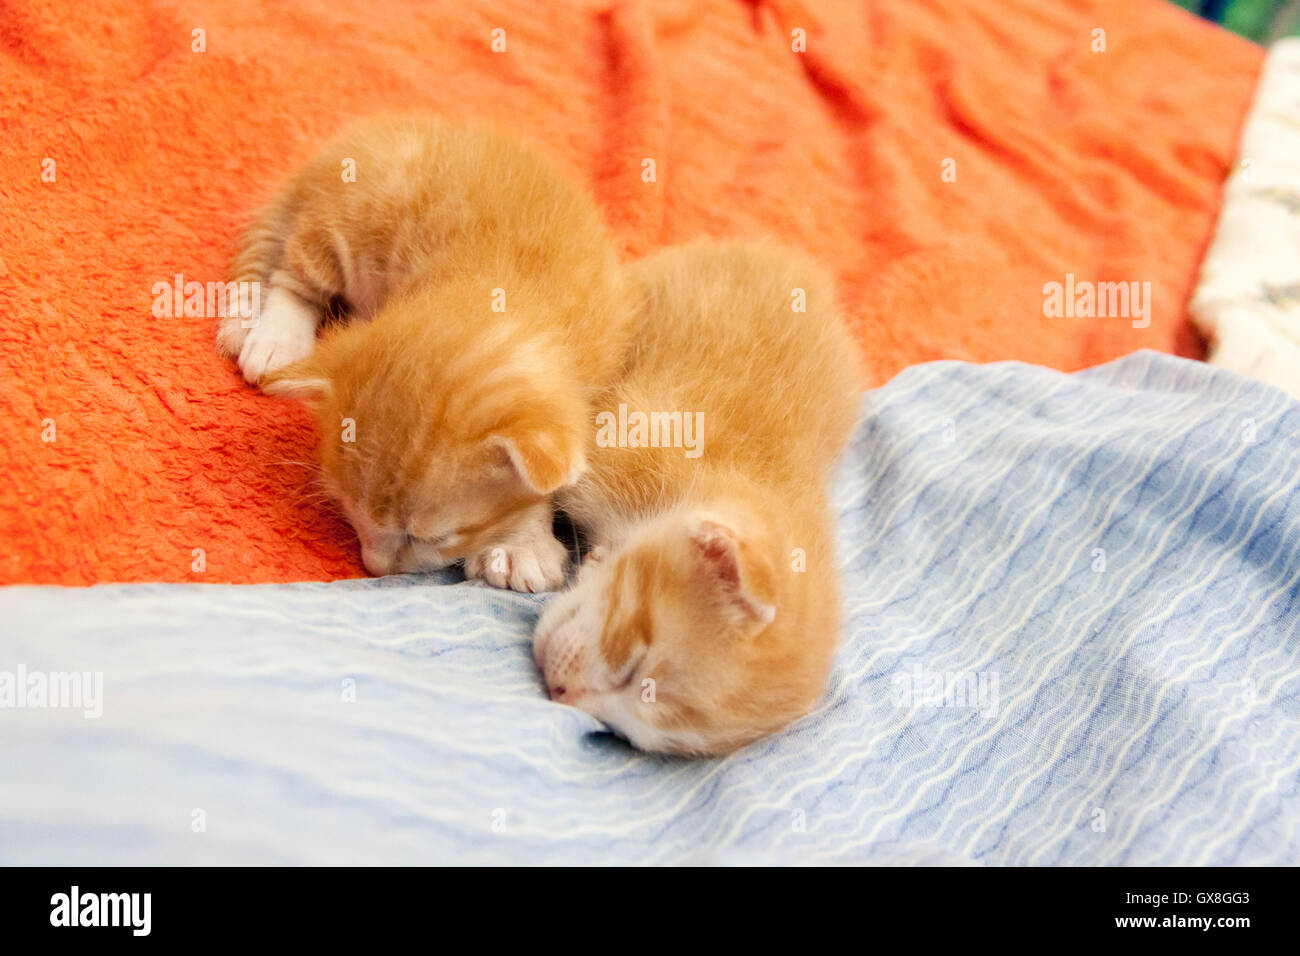 Mèo cam vằn ngủ là một khung cảnh rất đáng yêu và thư giãn. Hãy xem ảnh của chúng để thấy được sự thoải mái và yên tĩnh đến lạ kỳ của loài vật này khi nó nằm nghỉ.